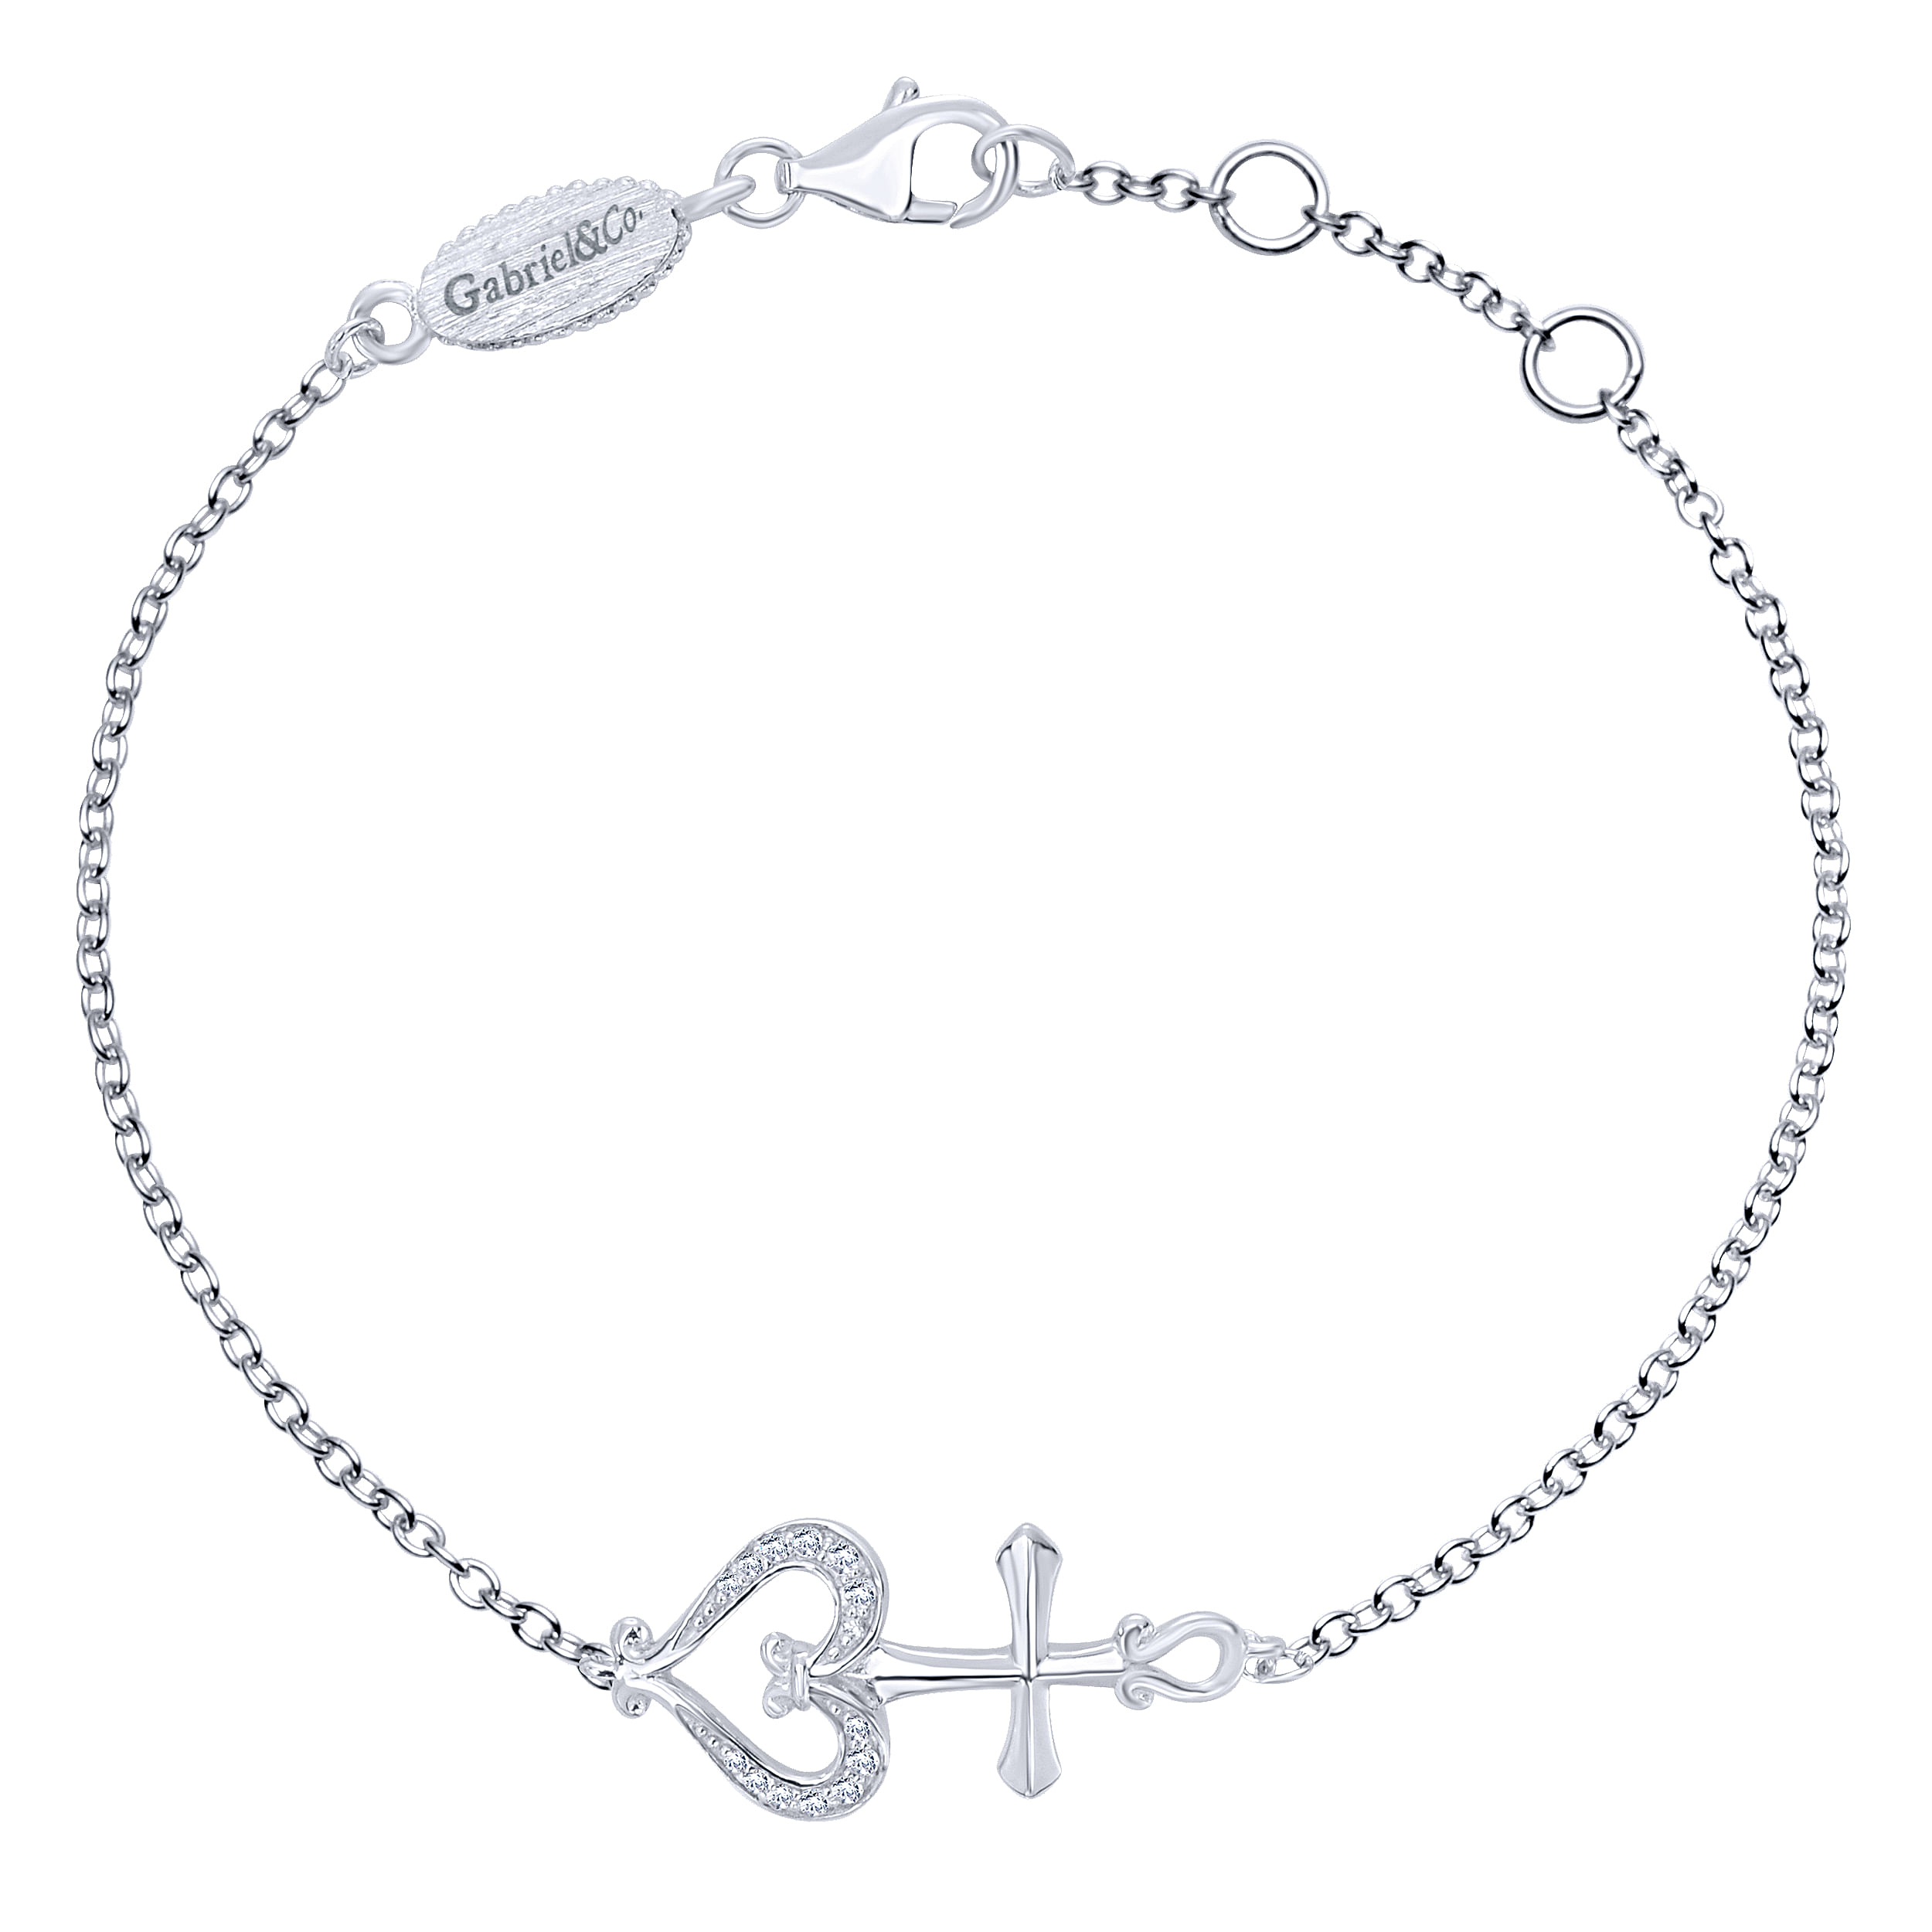 Silver Fashion Bracelet